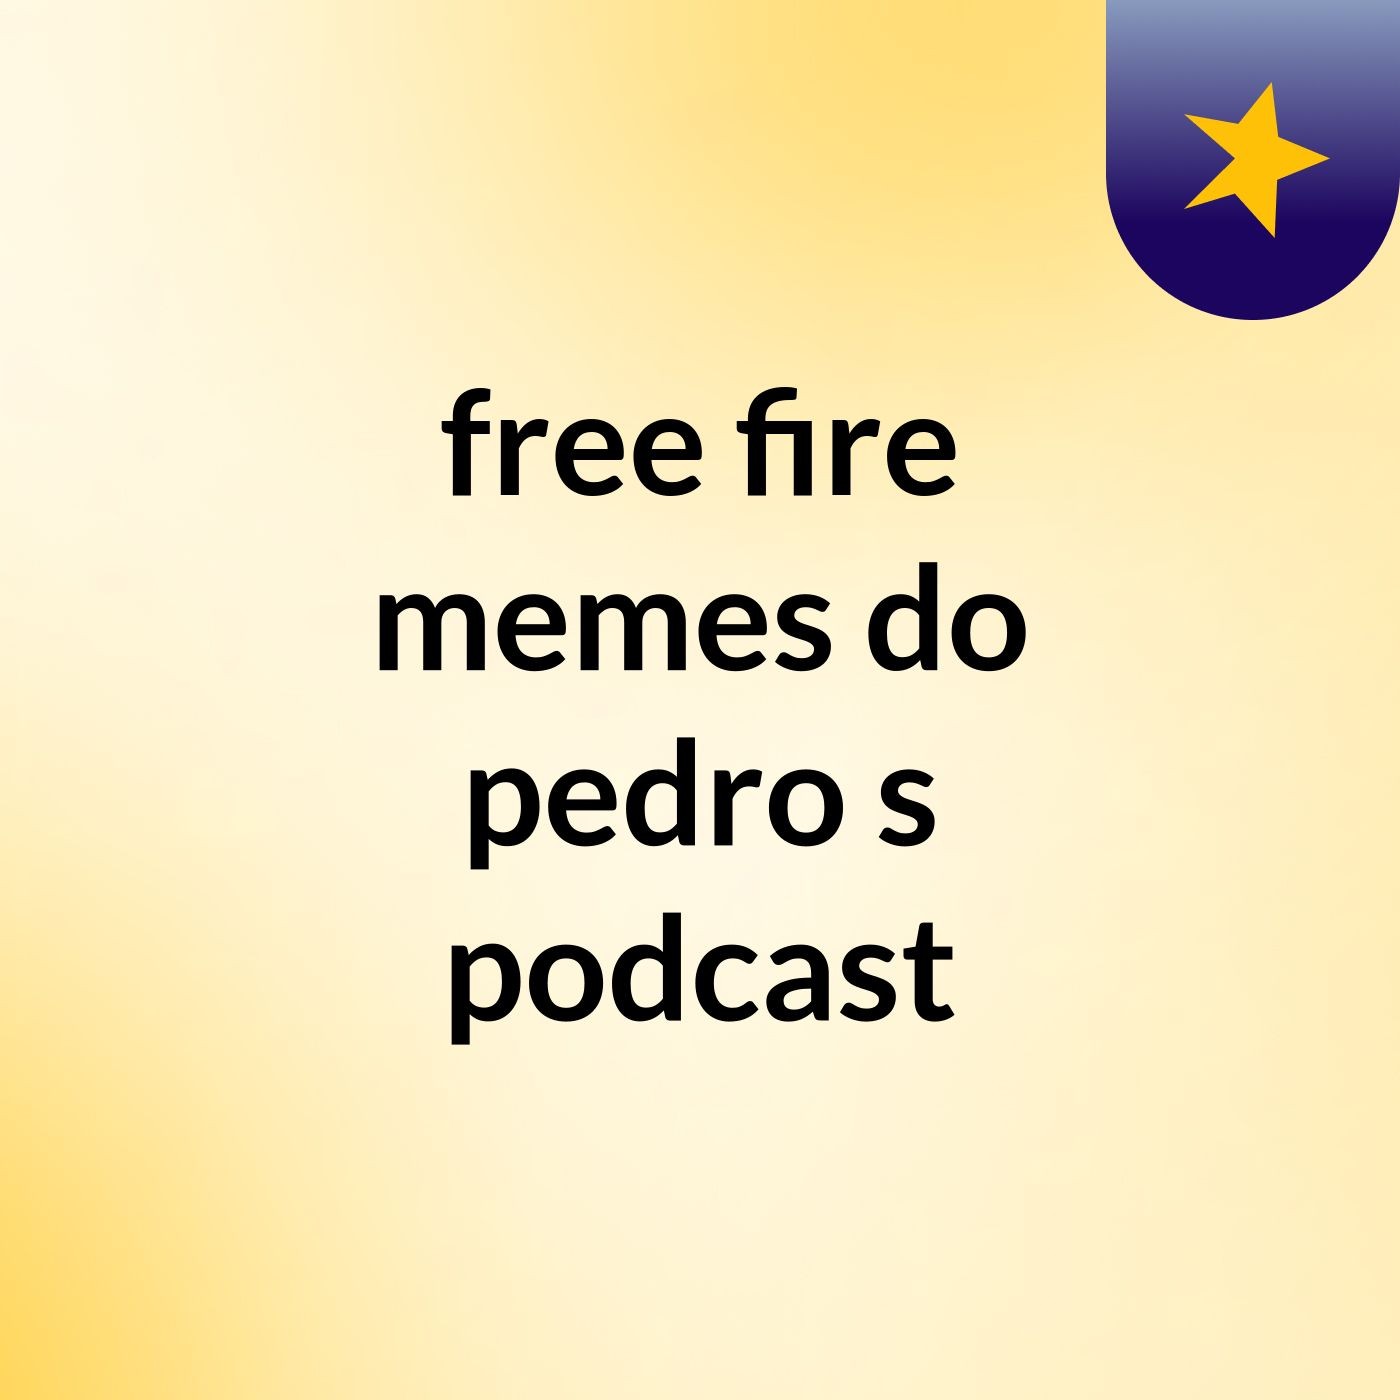 free fire memes do pedro's podcast